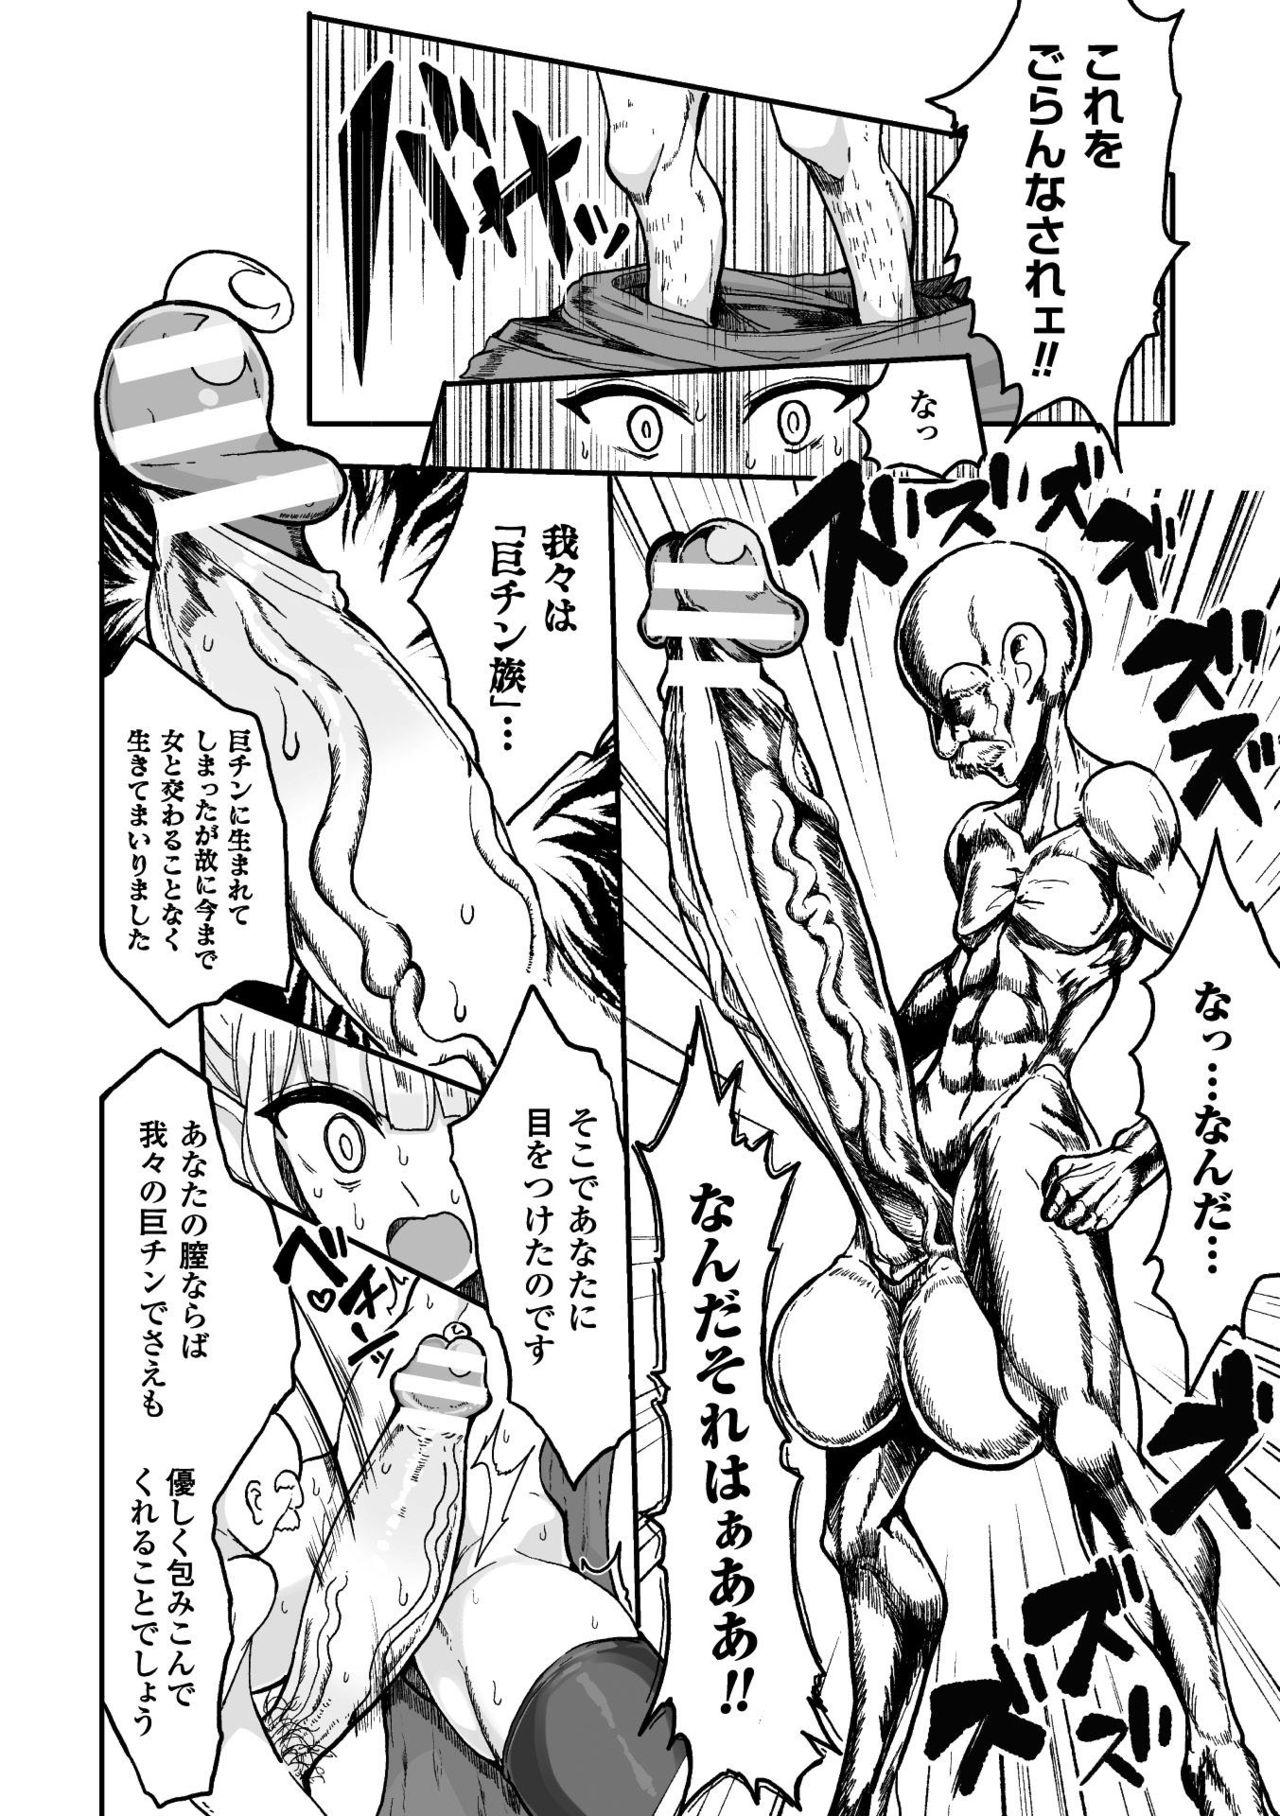 Mulher Kyojinzoku No Onna Kishi VS Goblin Gundan Joven - Page 10